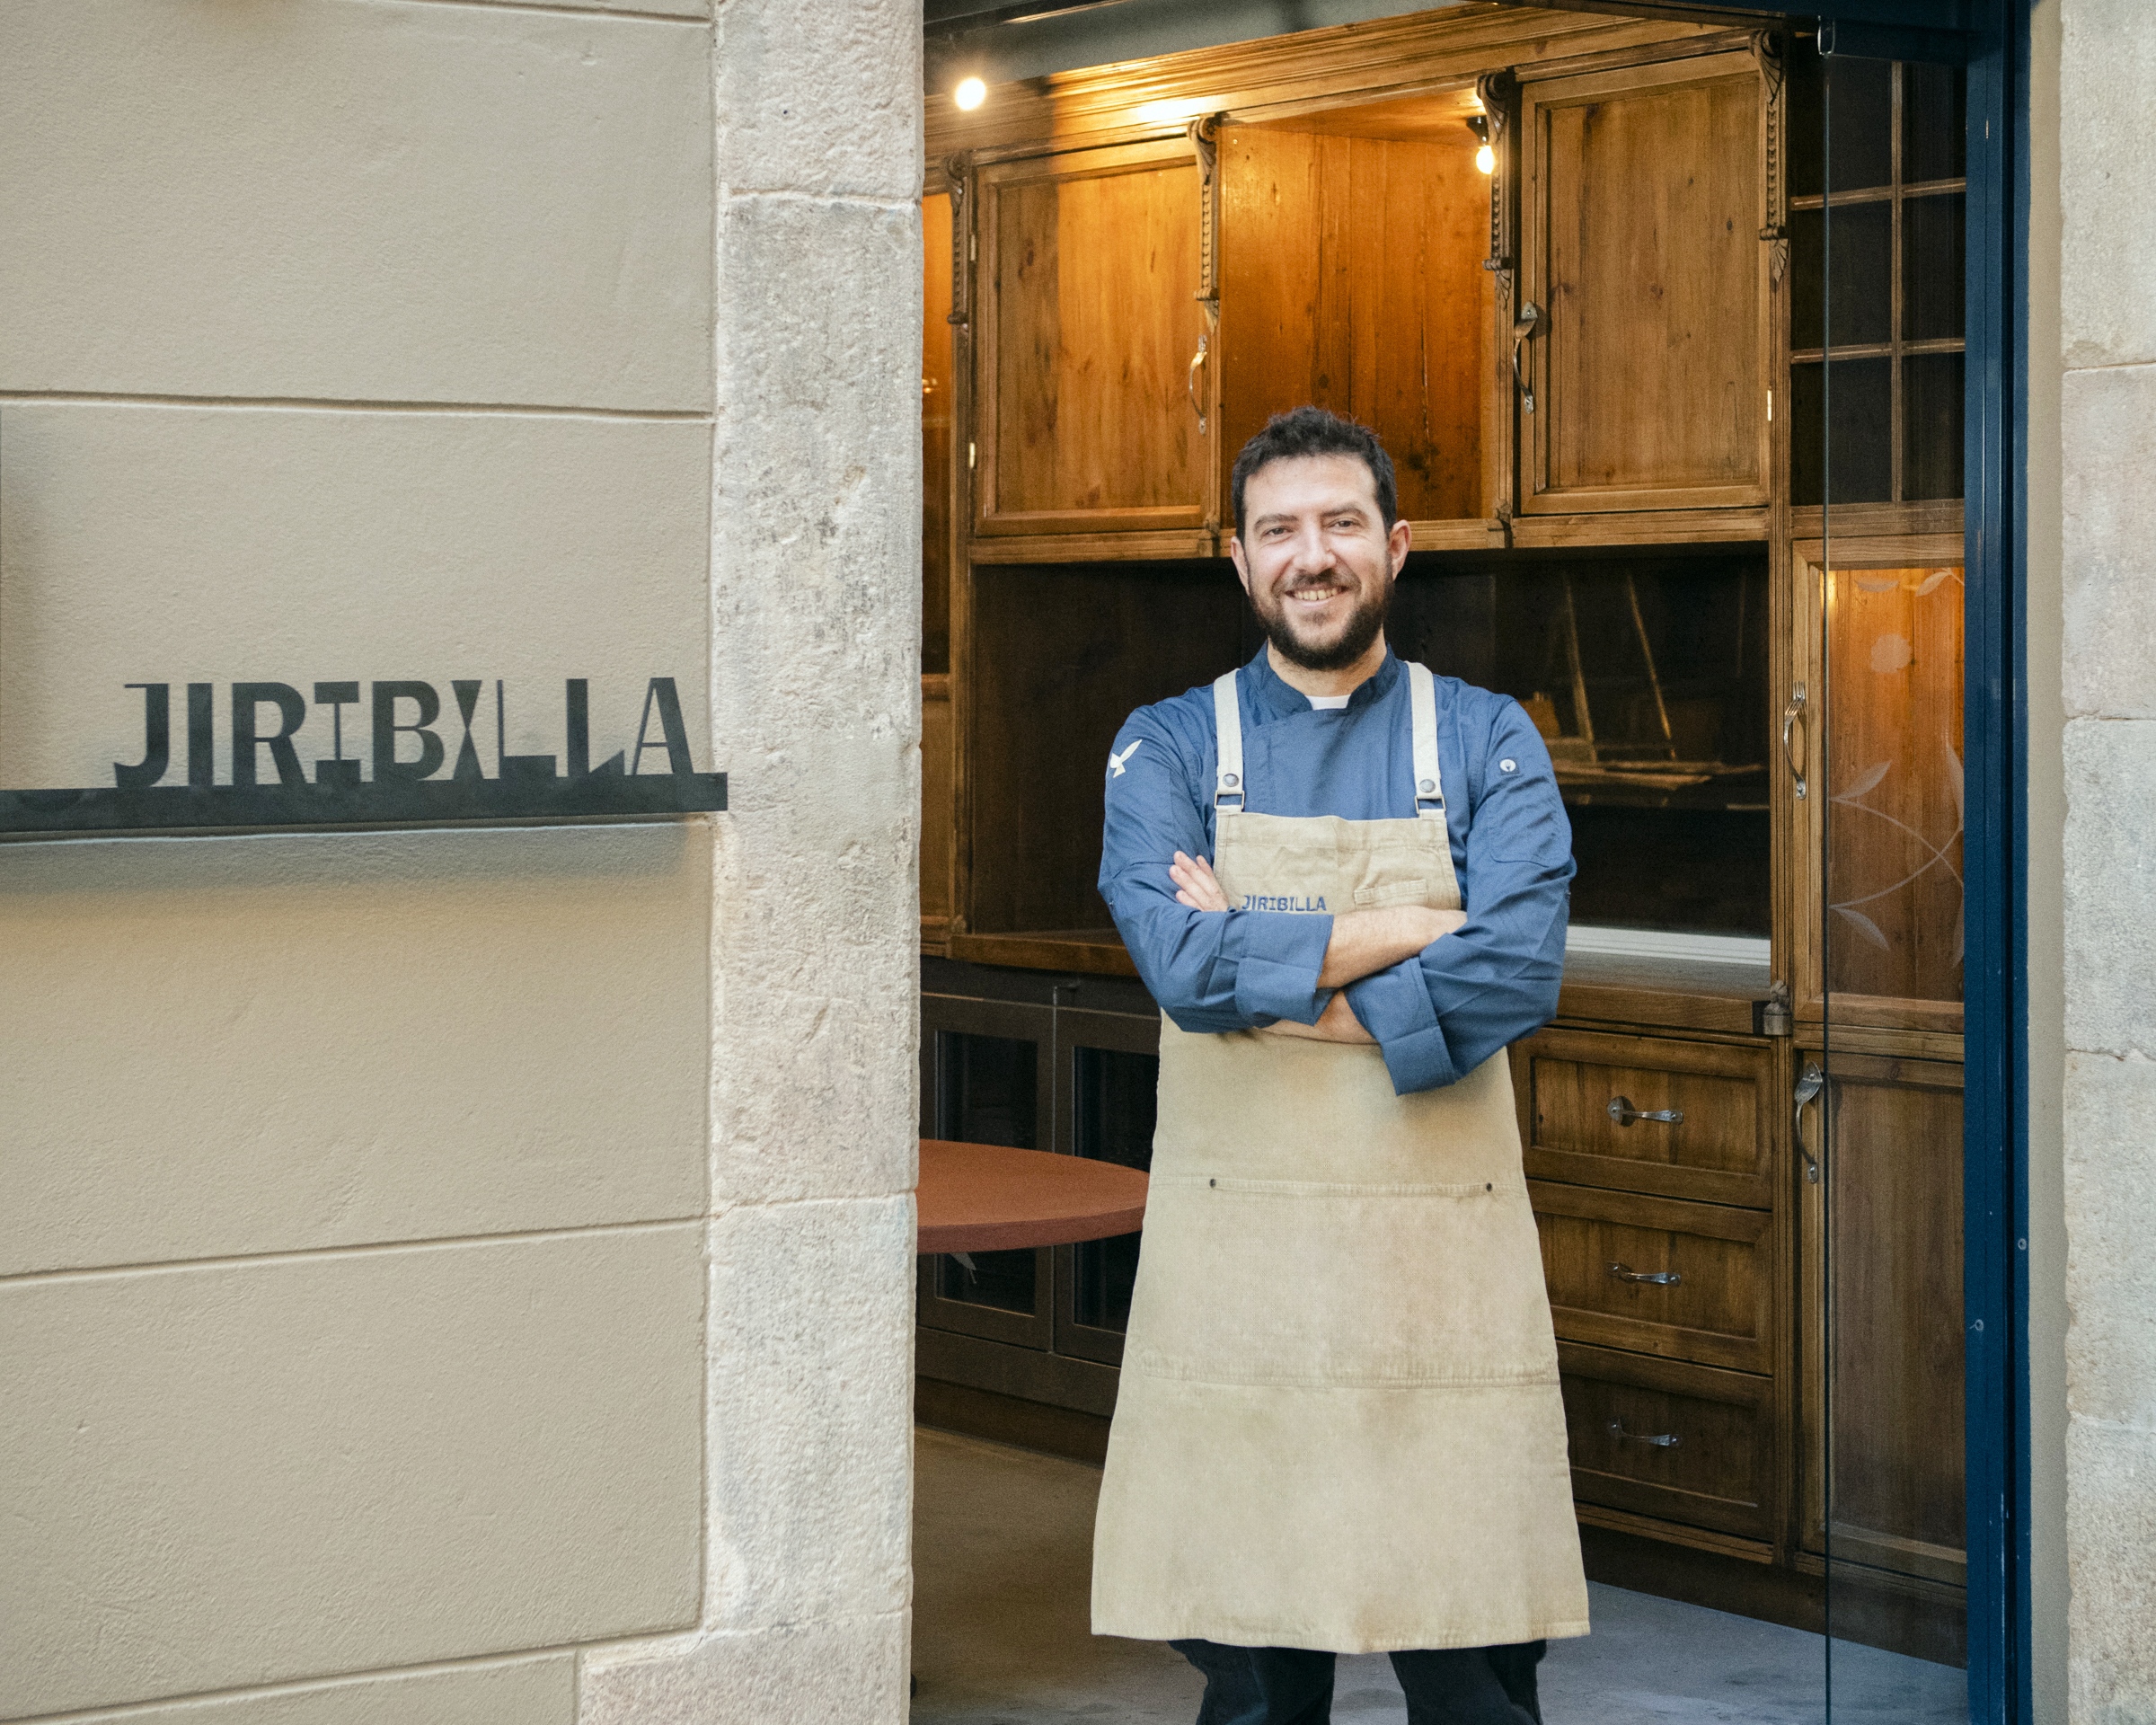 Producto local y ejecución impecable en este nuevo restaurante de Barcelona